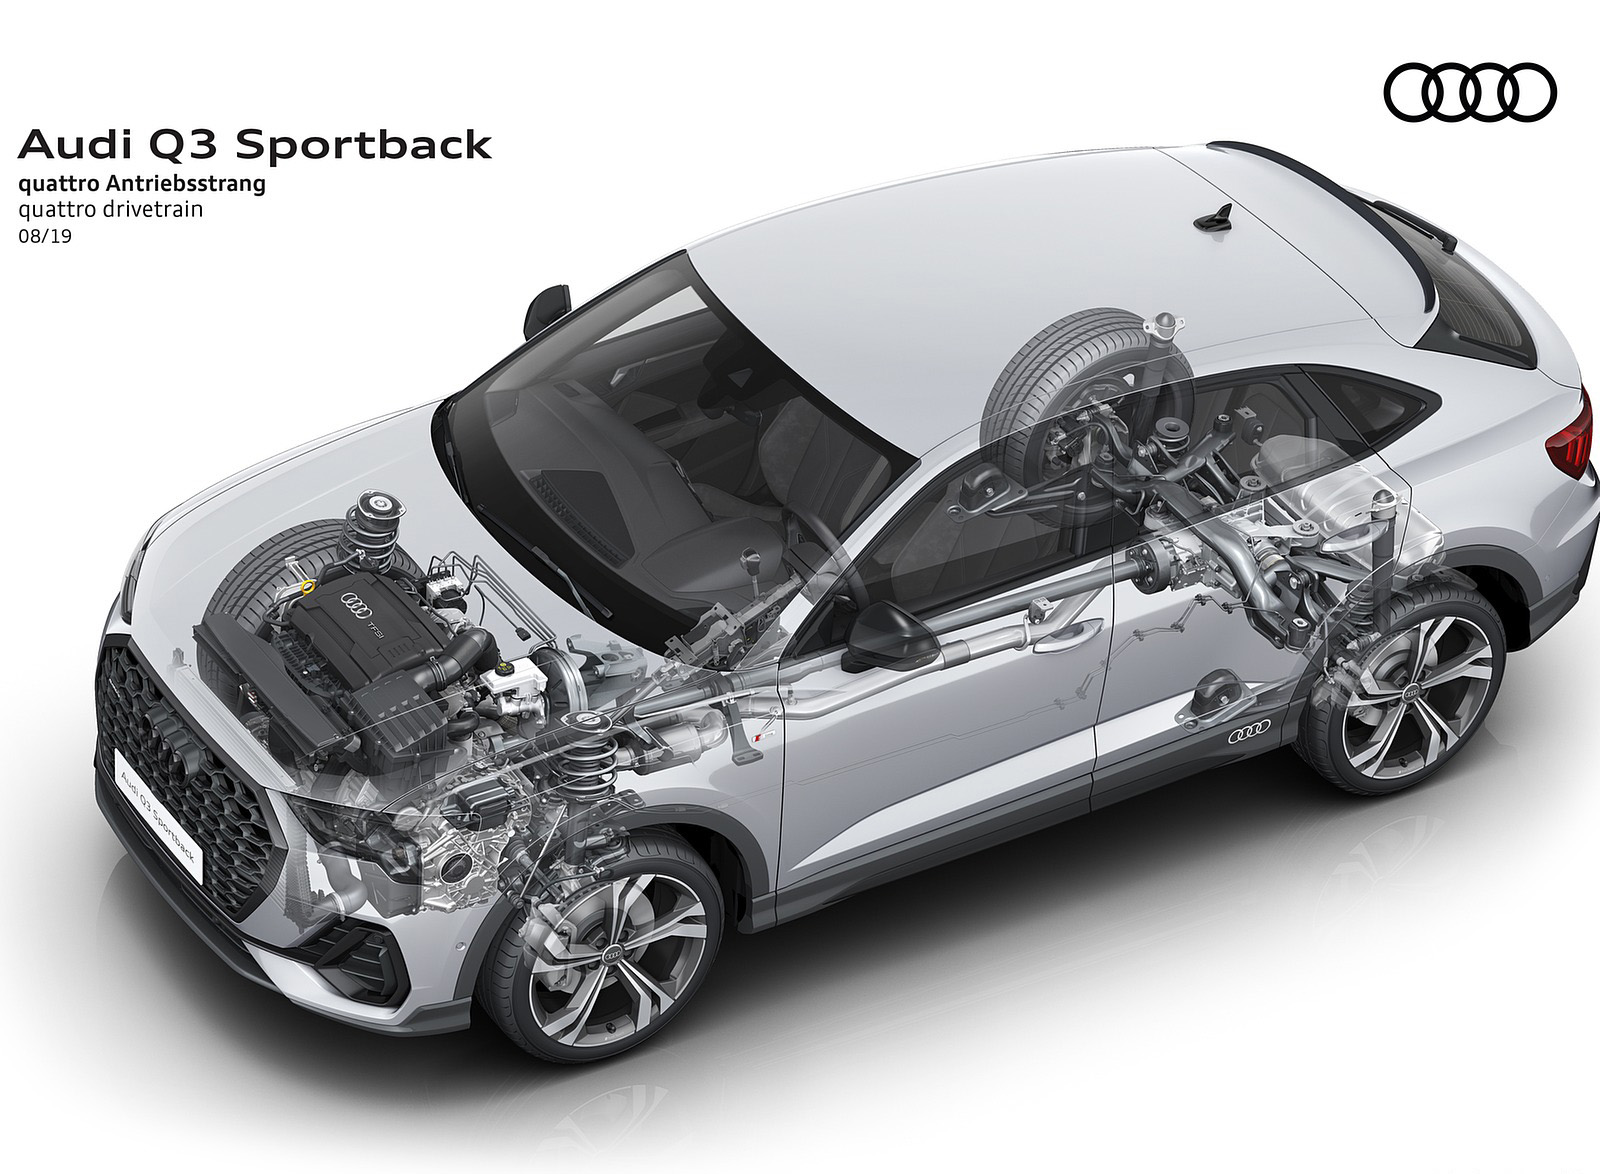 2020 Audi Q3 Sportback quattro drivetrain Wallpapers #248 of 285